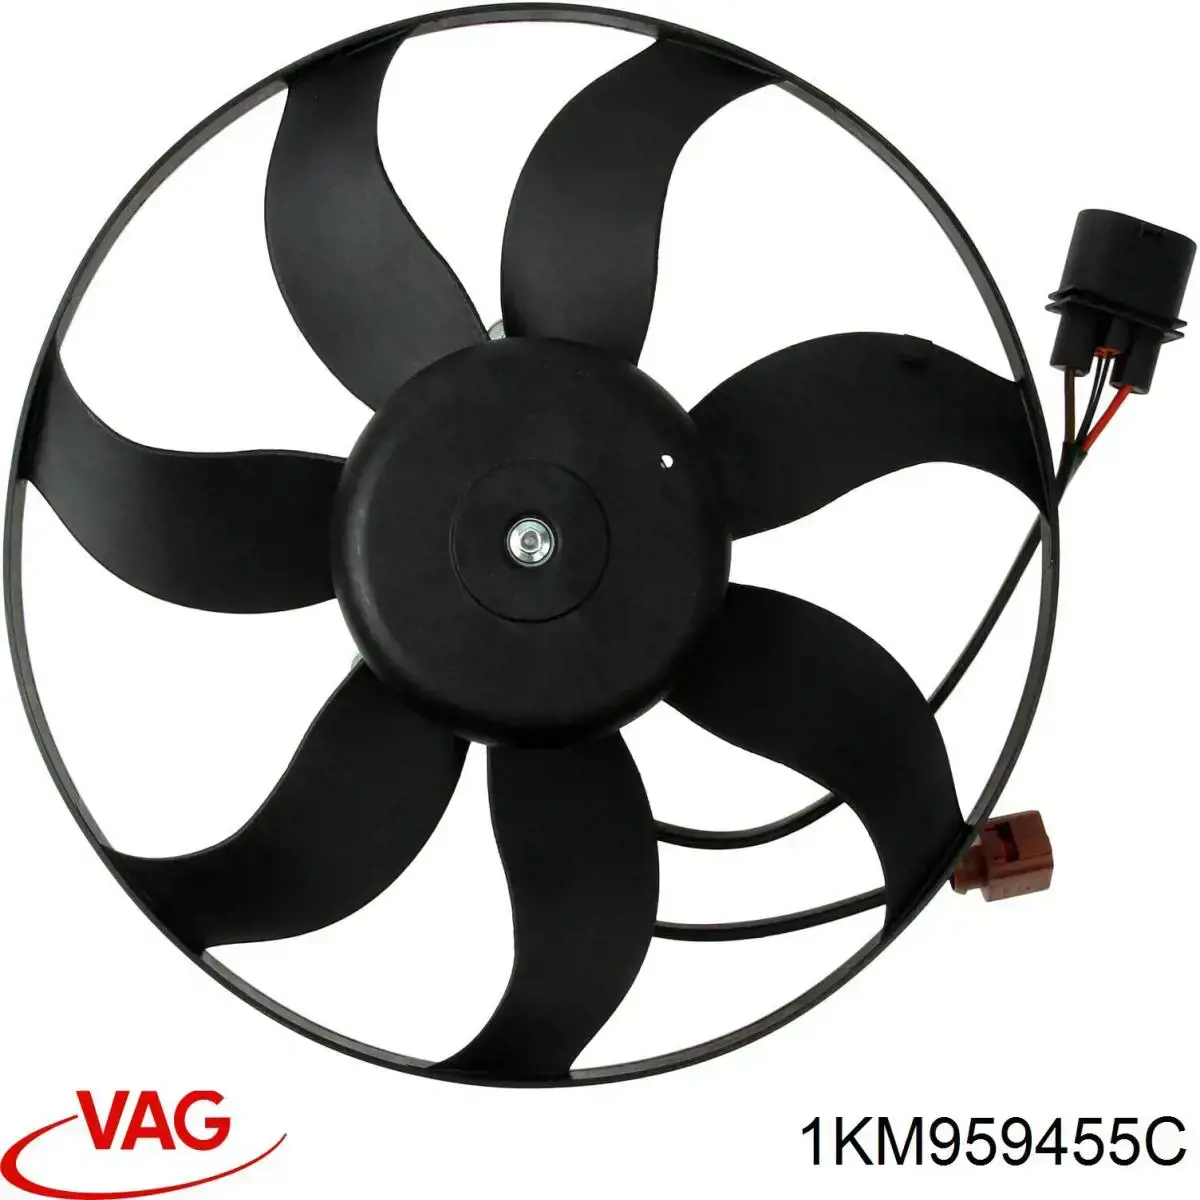 1KM959455C VAG ventilador elétrico de esfriamento montado (motor + roda de aletas esquerdo)